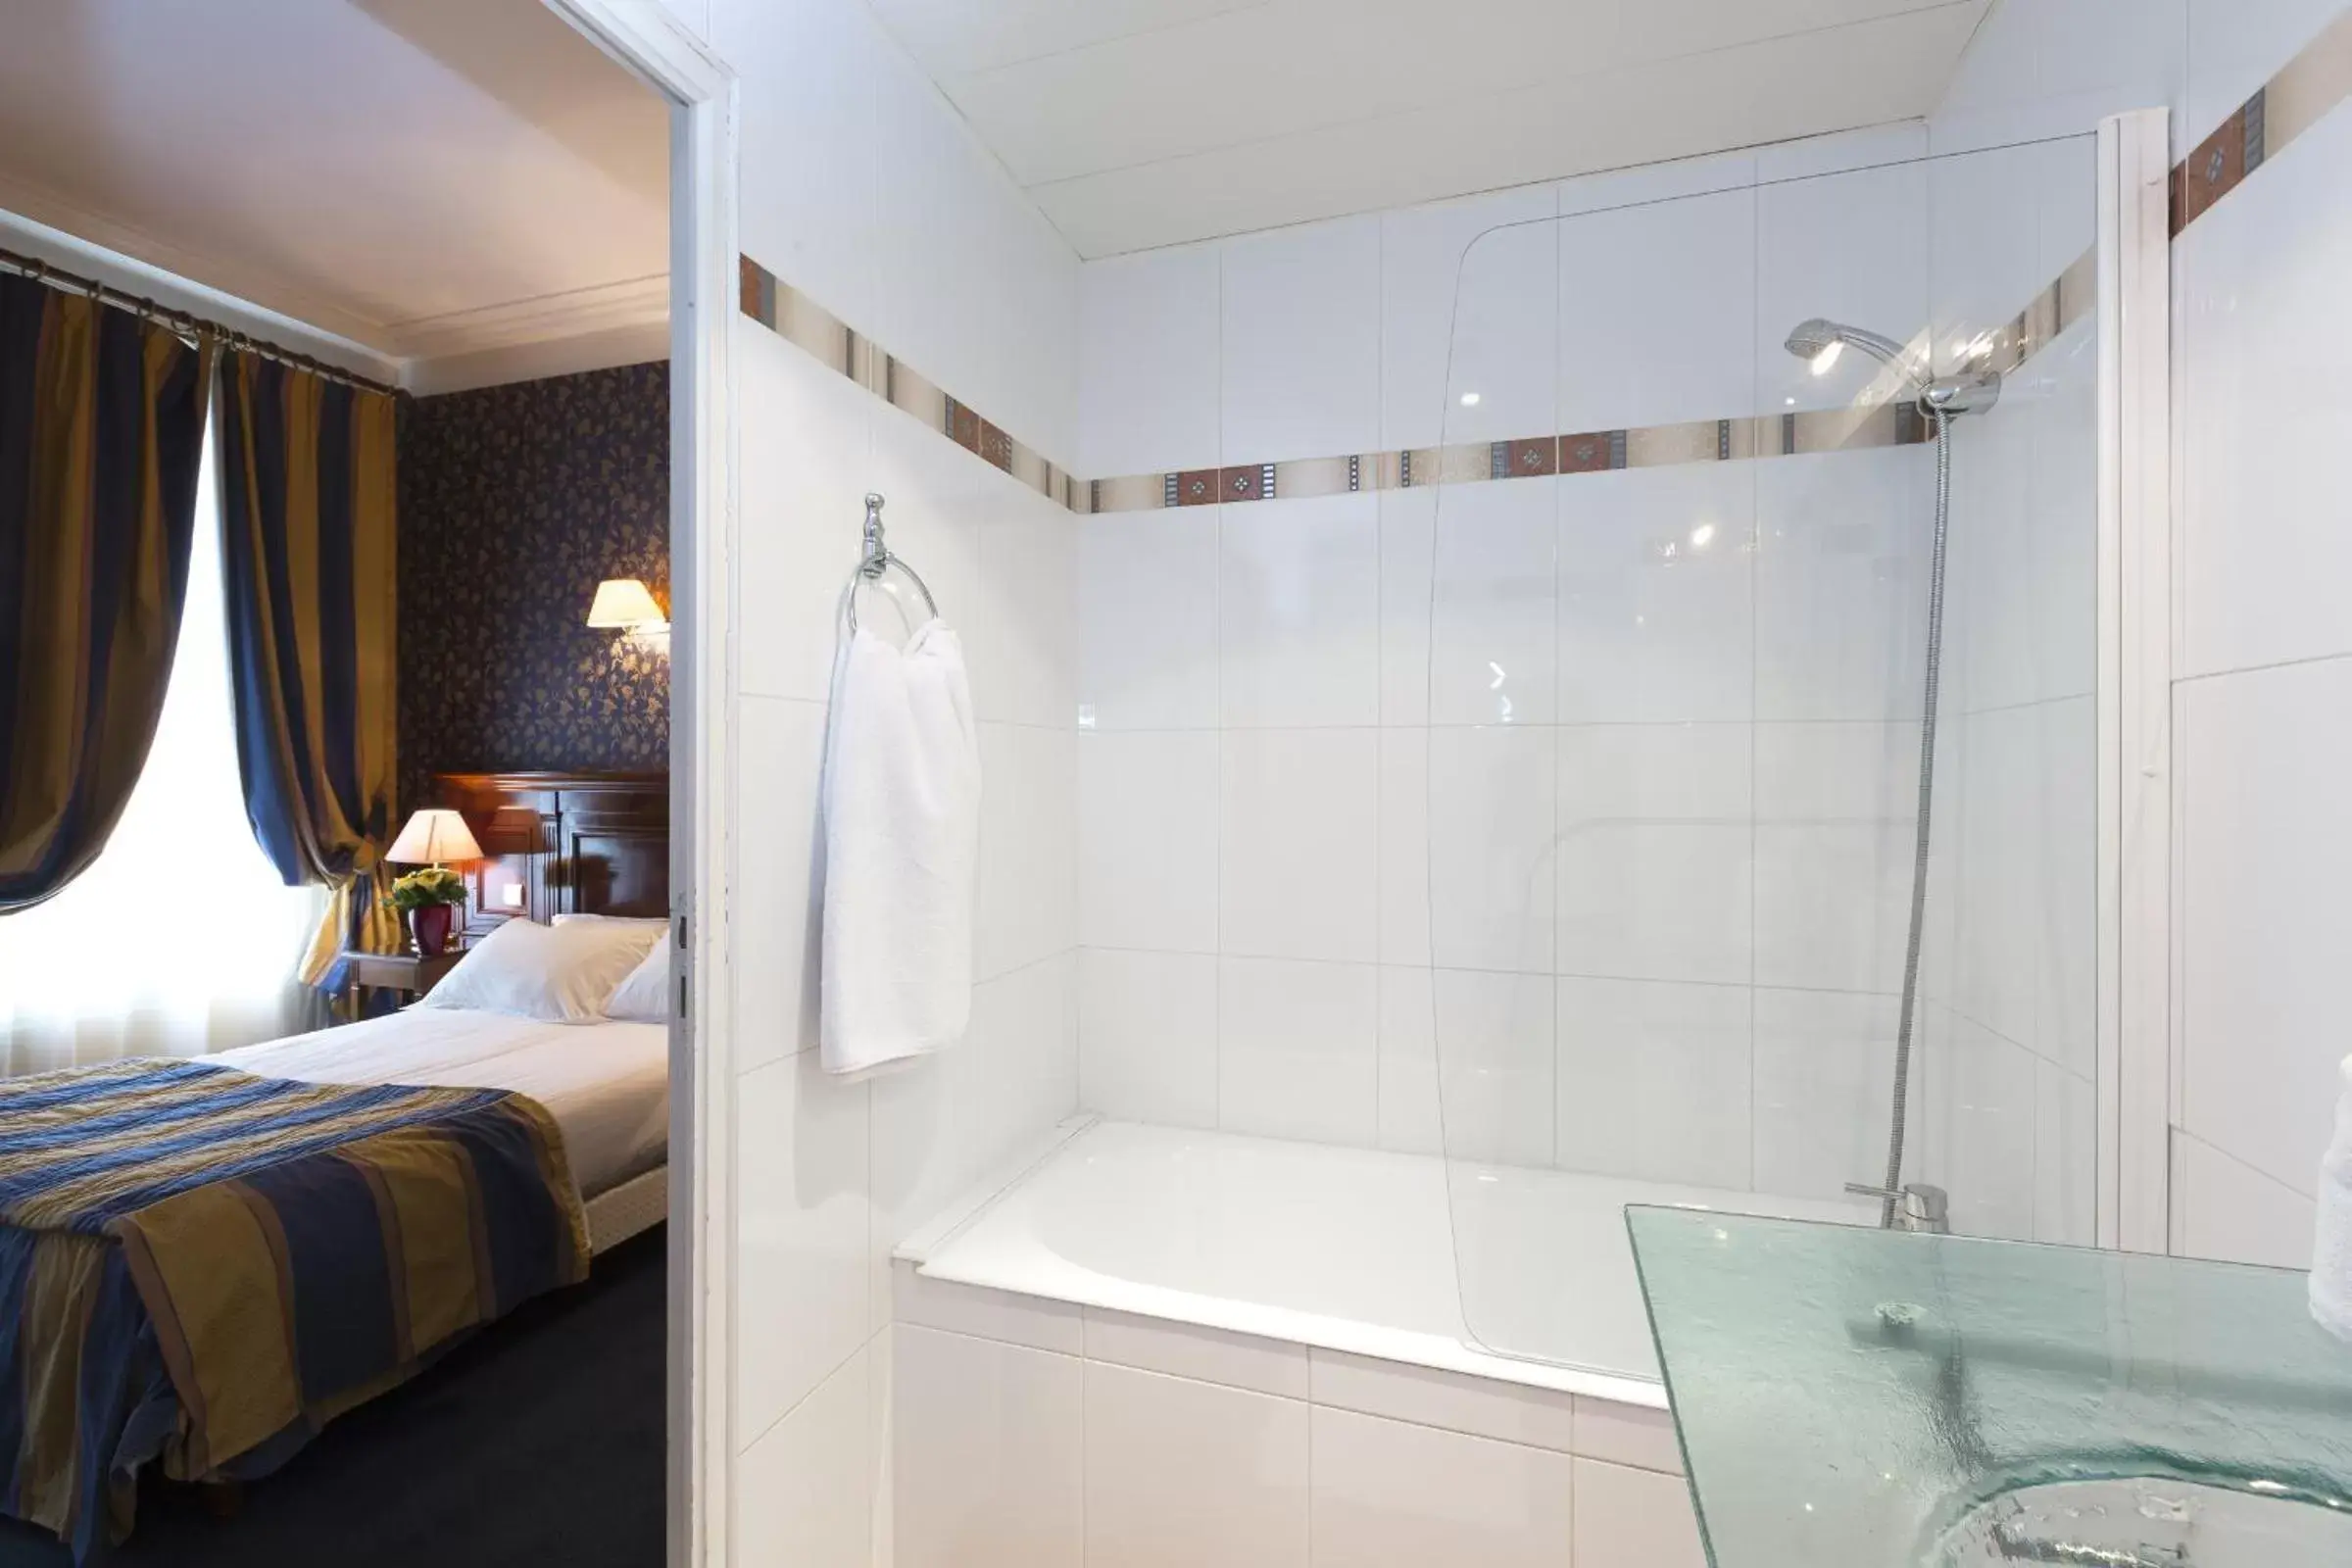 Day, Bathroom in Hotel Viator - Gare de Lyon